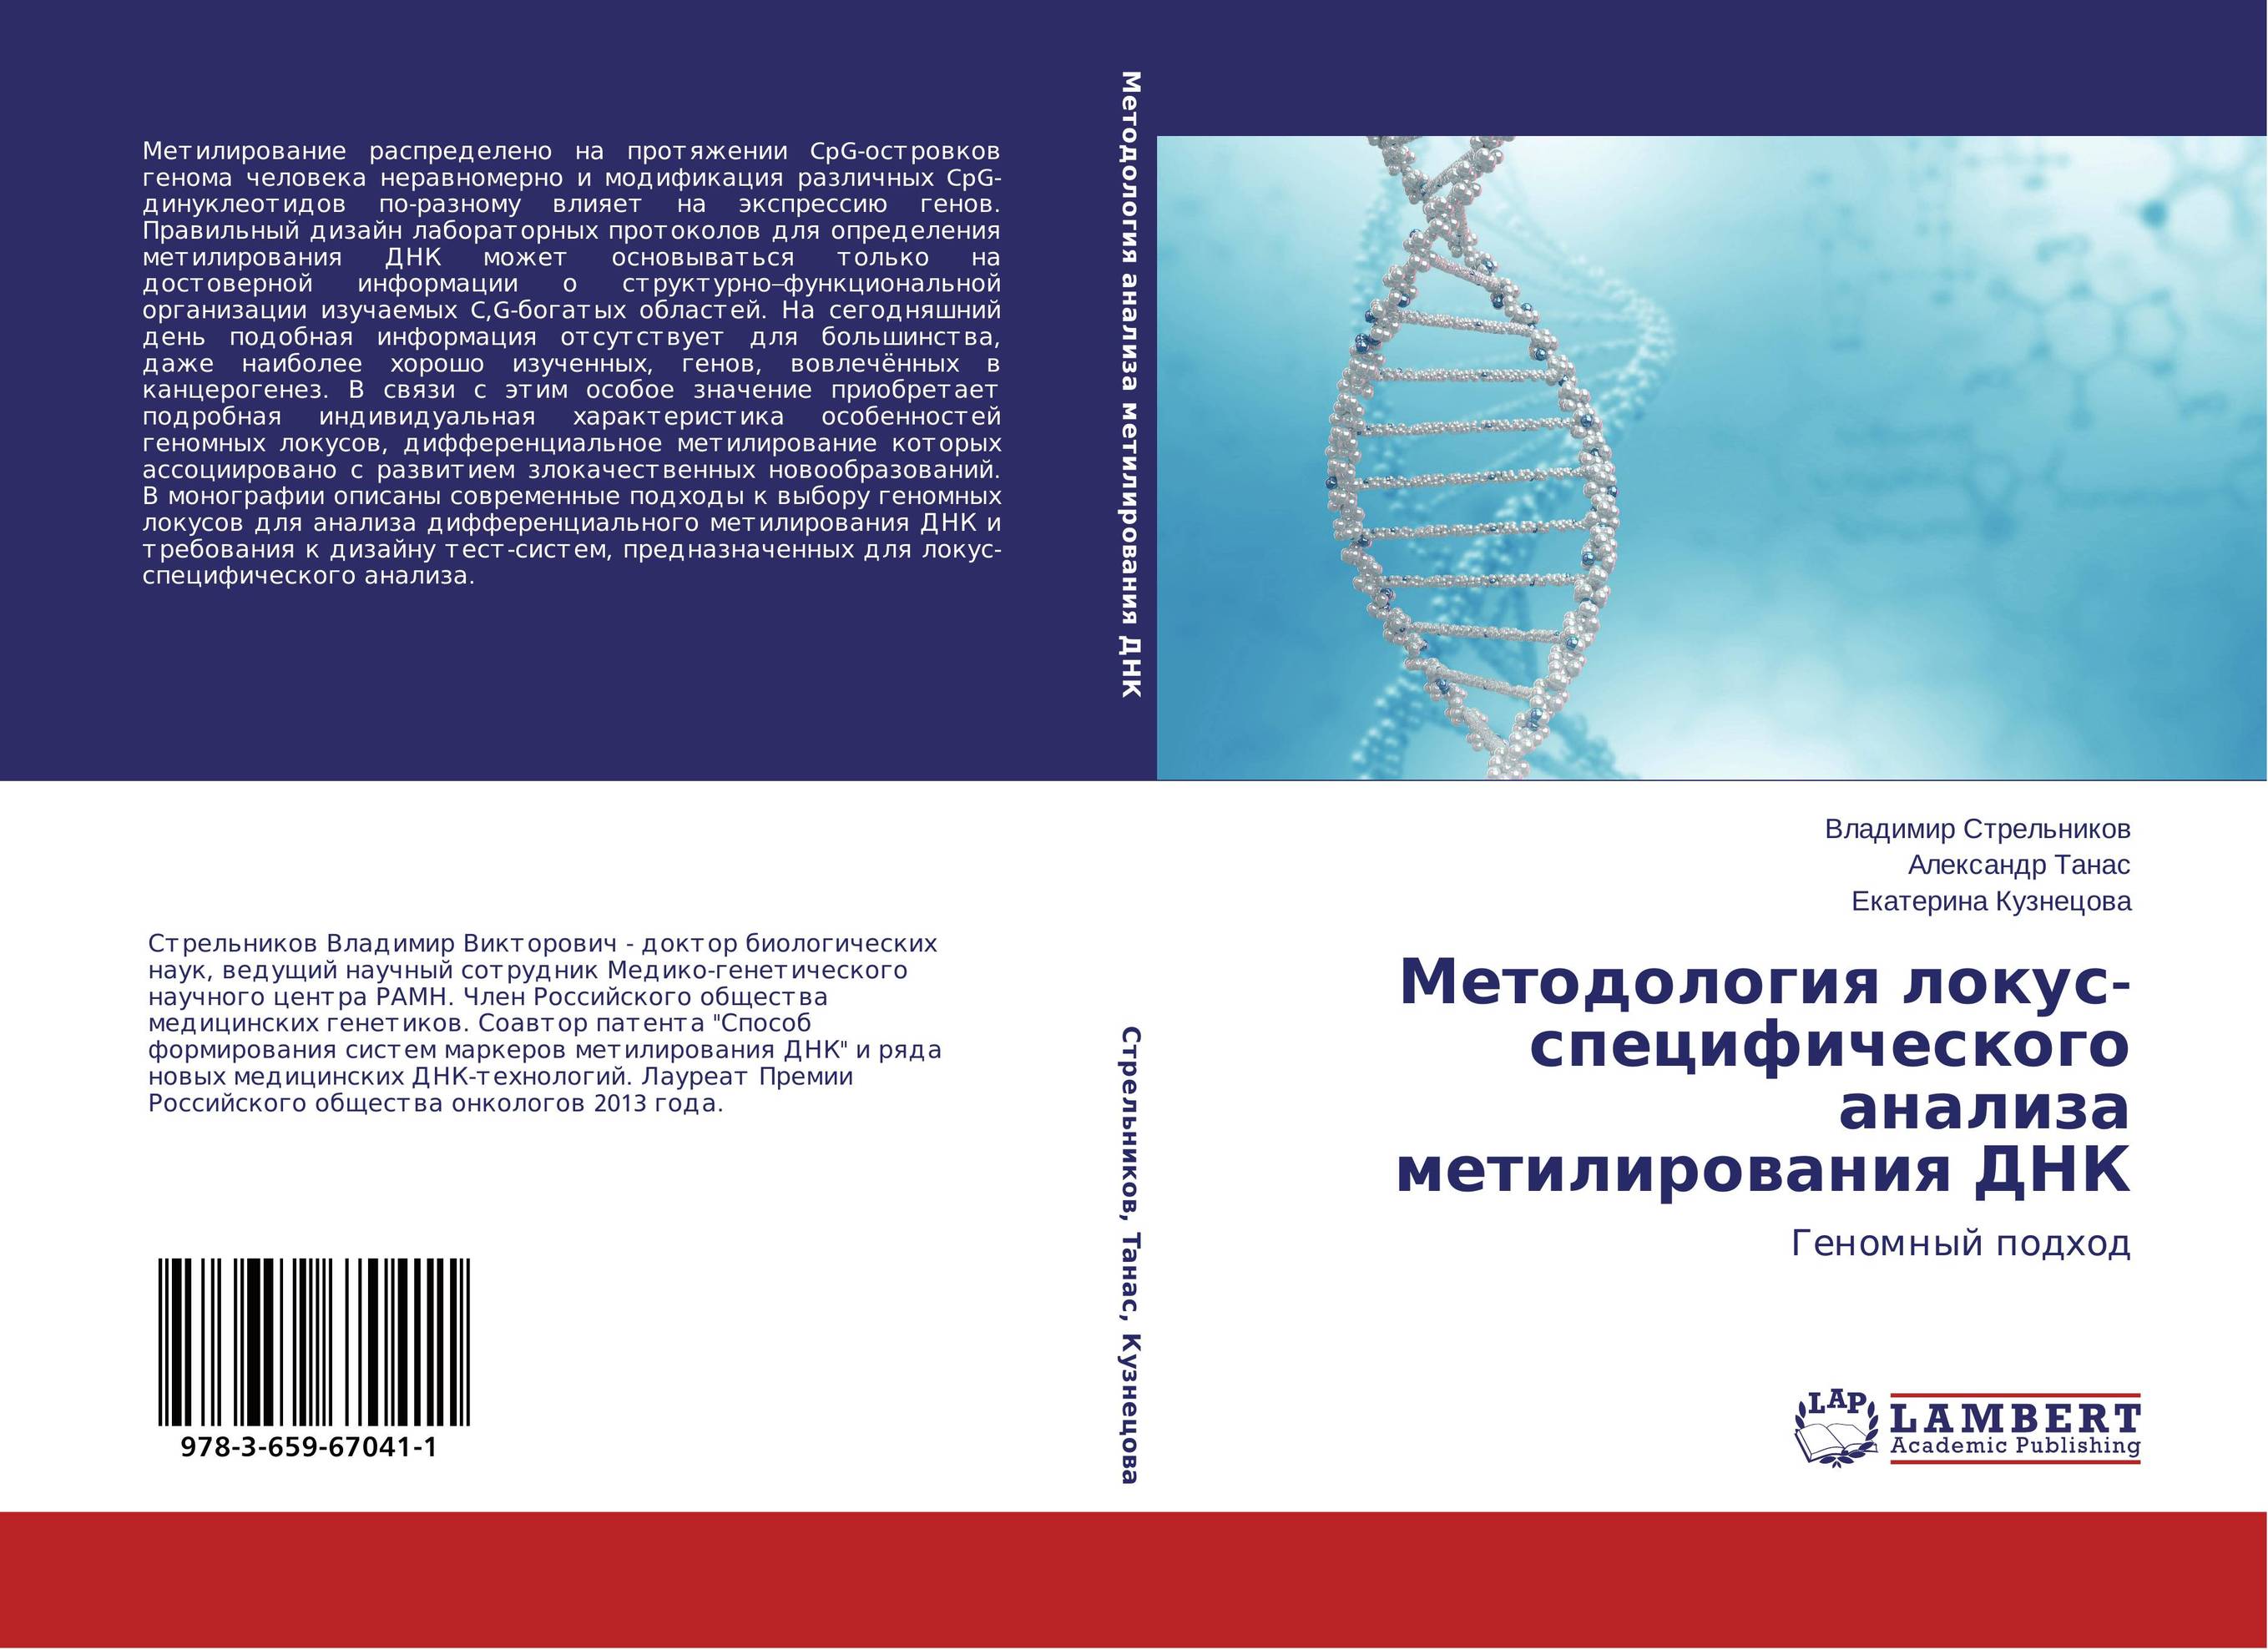 Методология локус-специфического анализа метилирования ДНК. Геномный подход.